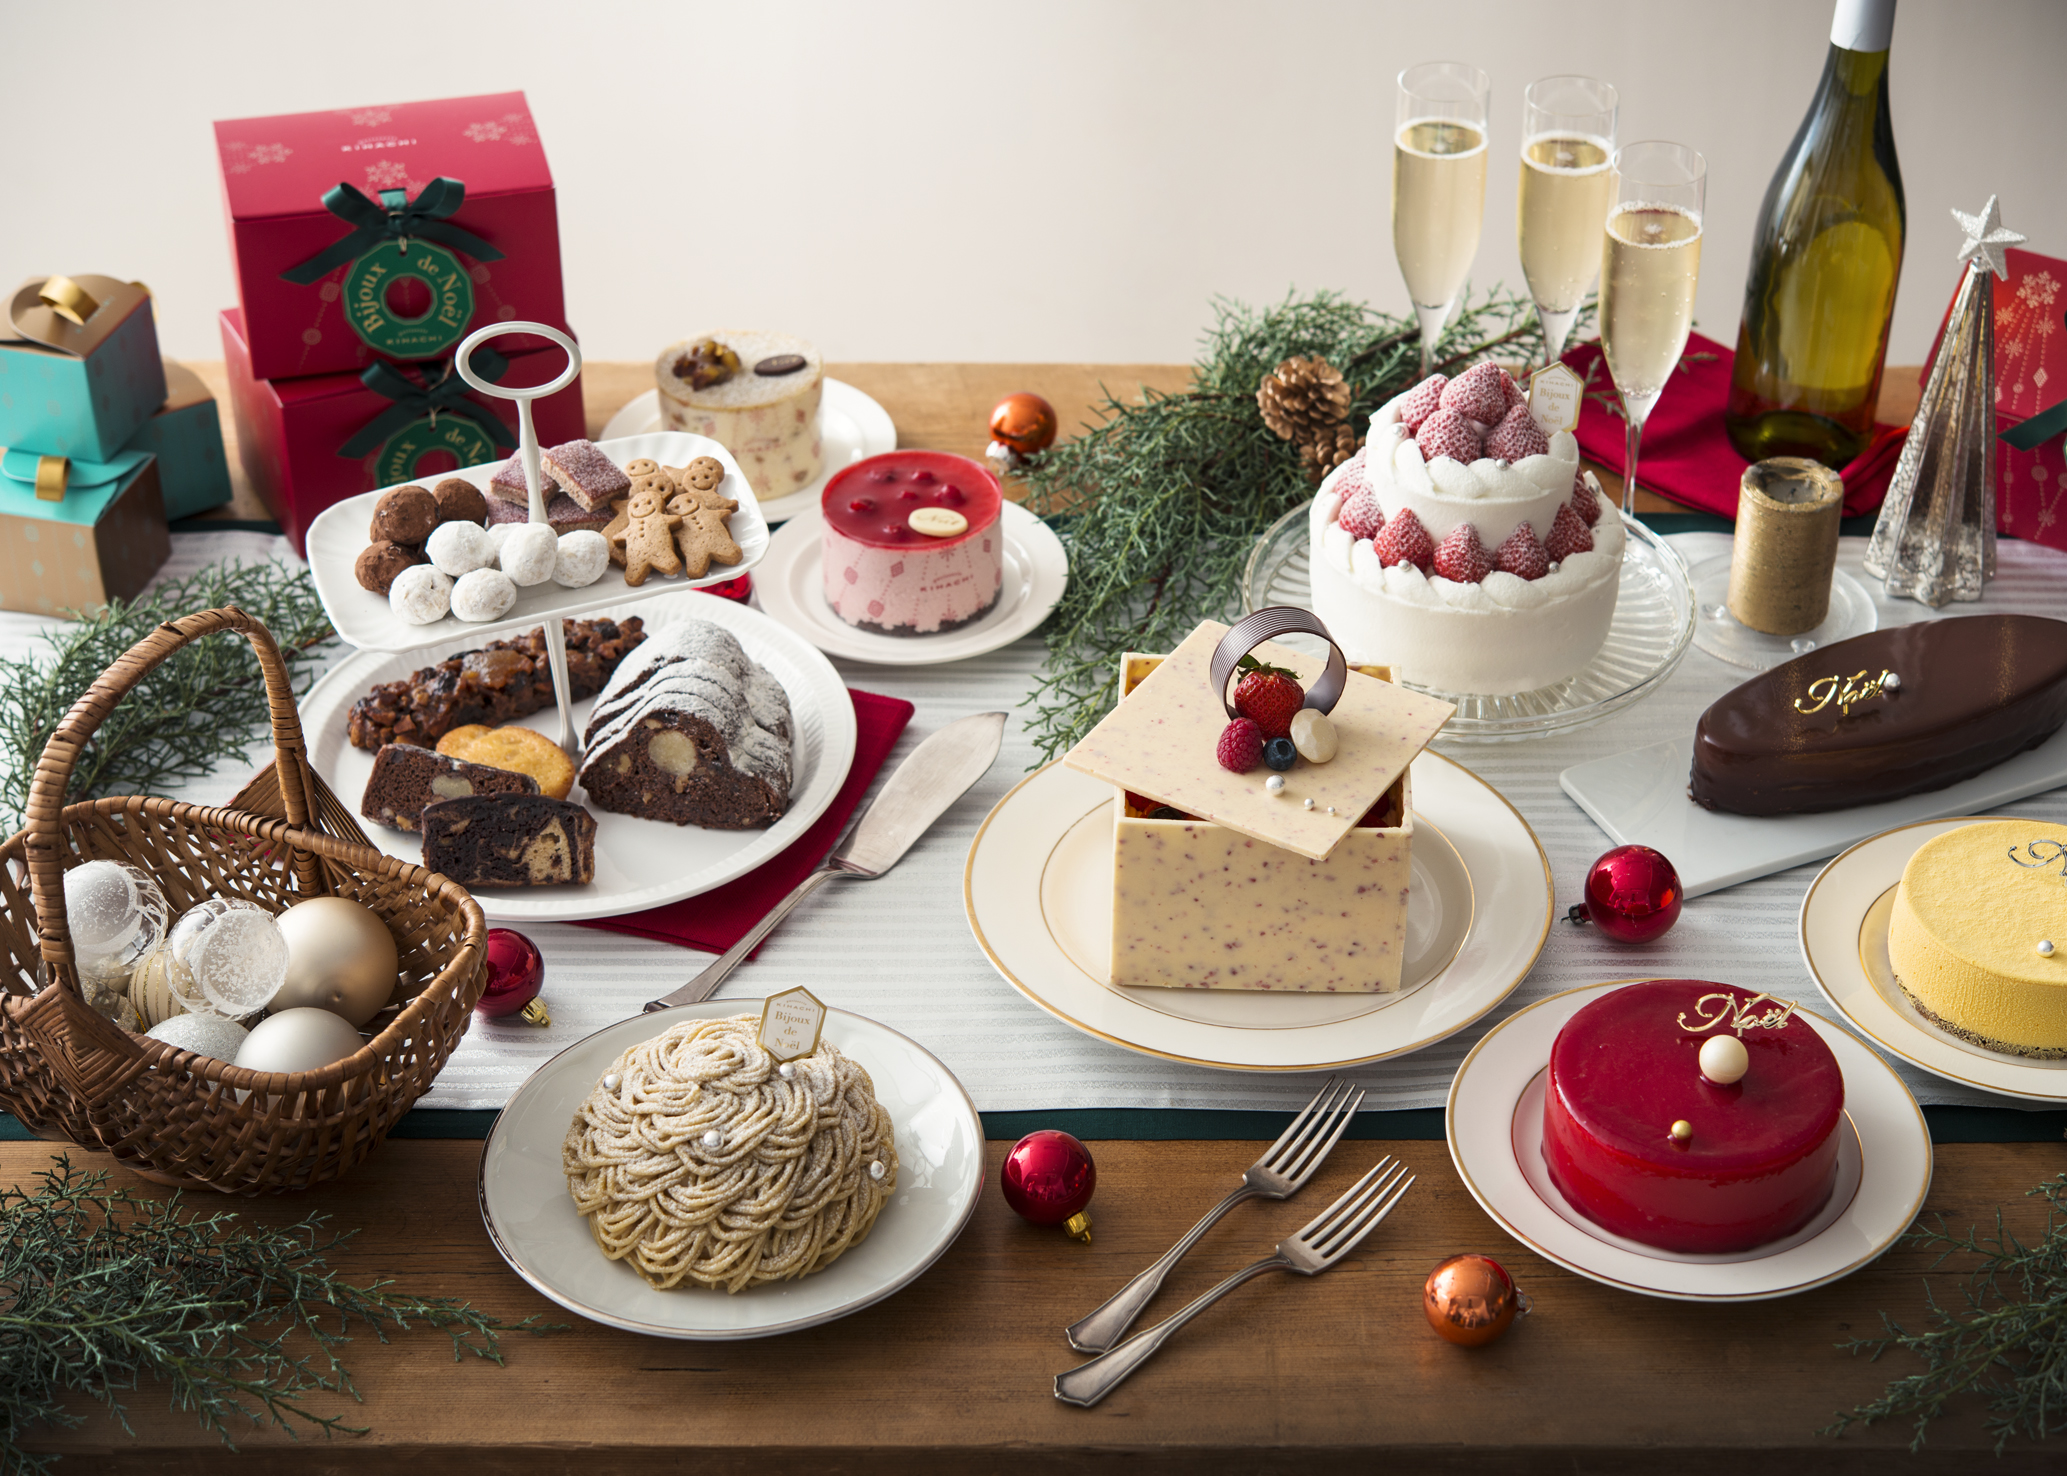 パティスリー キハチ 15クリスマステーマ Bijoux De Noel をイメージしたスペシャルケーキ やプレミアムいちご きらぴ香 を使ったショートケーキなど新作のクリスマスケーキが8種類登場 株式会社サザビーリーグ アイビーカンパニーのプレスリリース